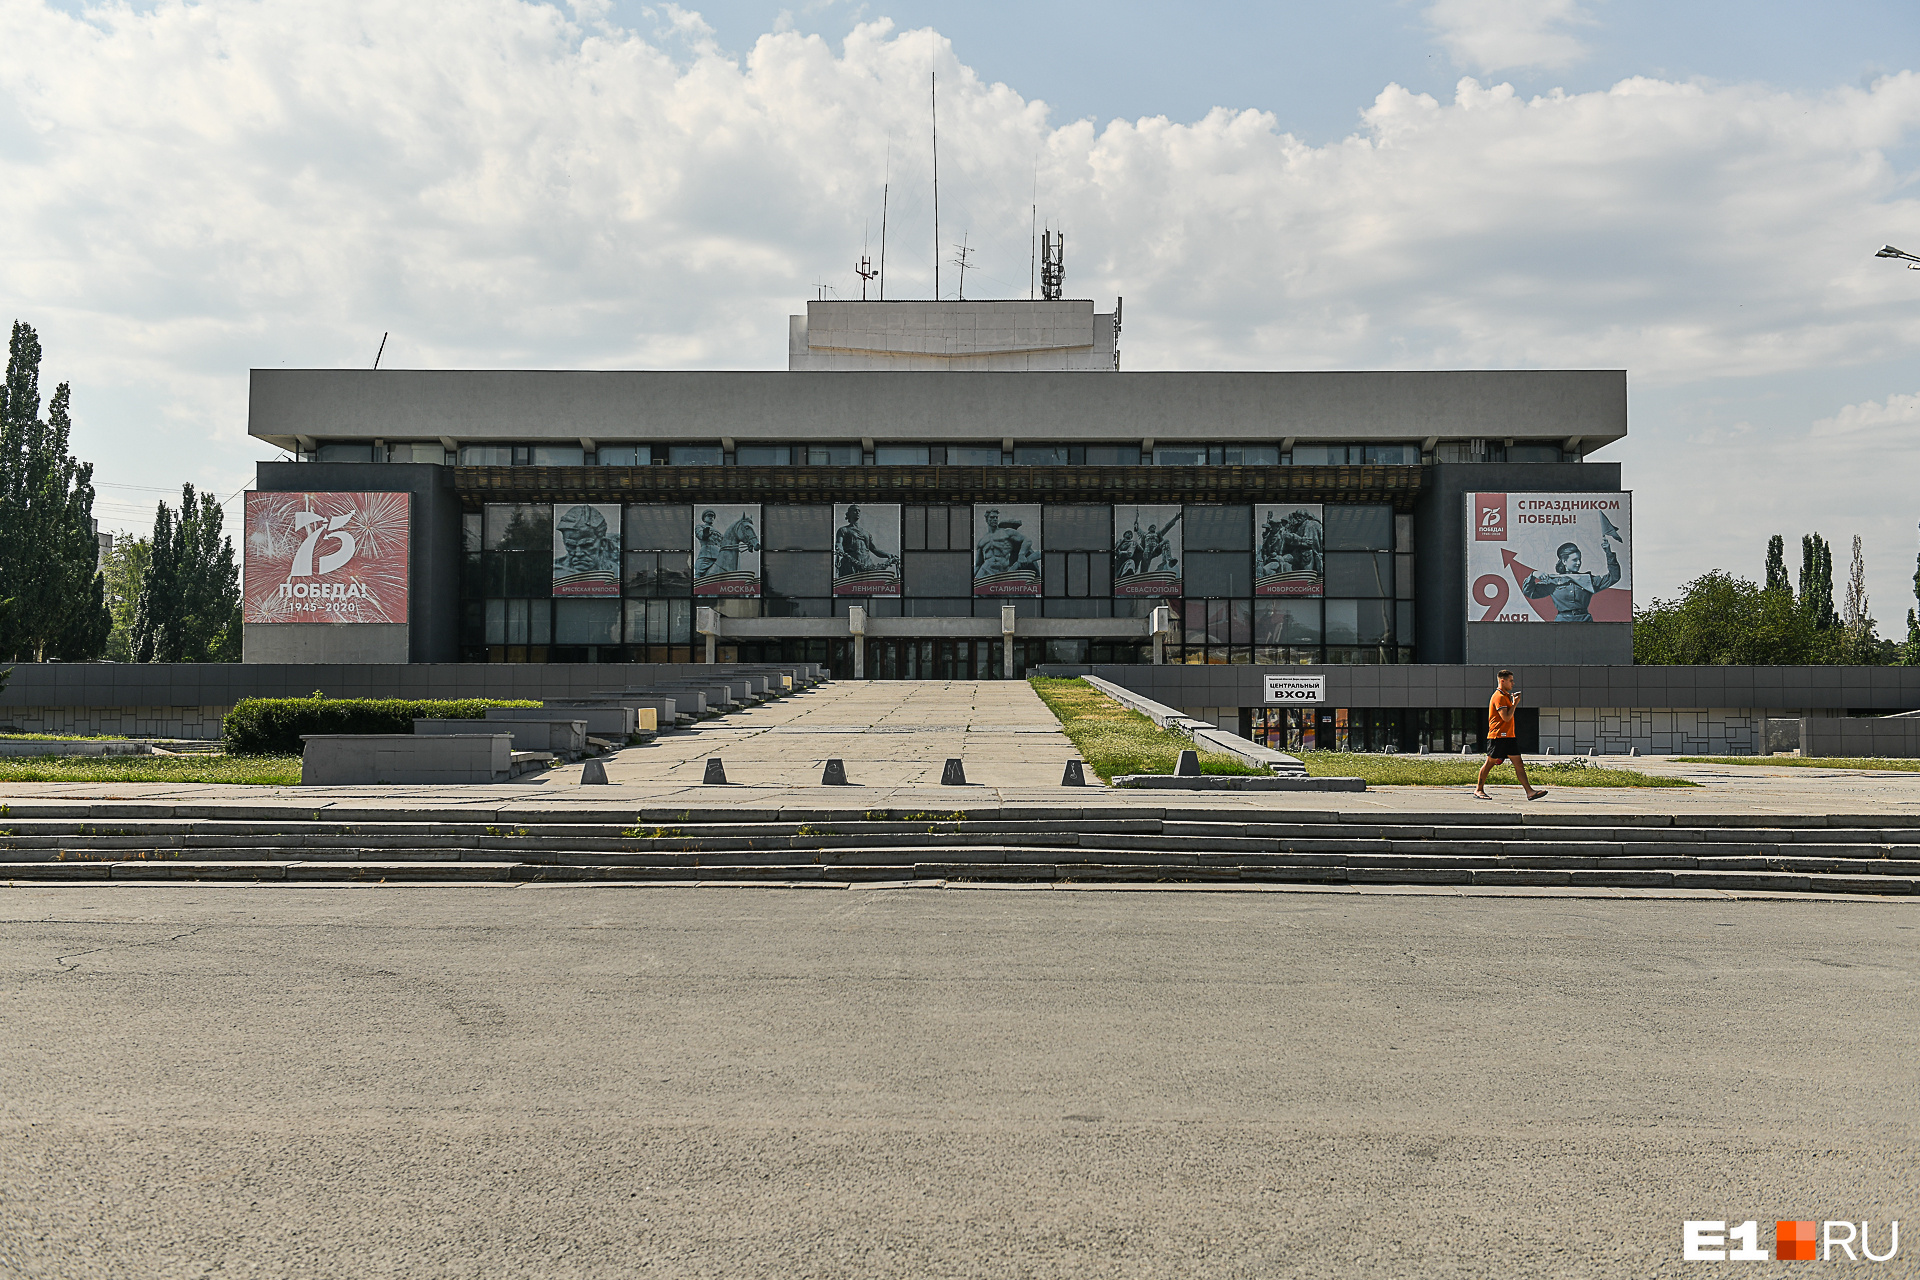 Сегодня в здании на Фестивальной располагается Свердловский областной дворец народного творчества